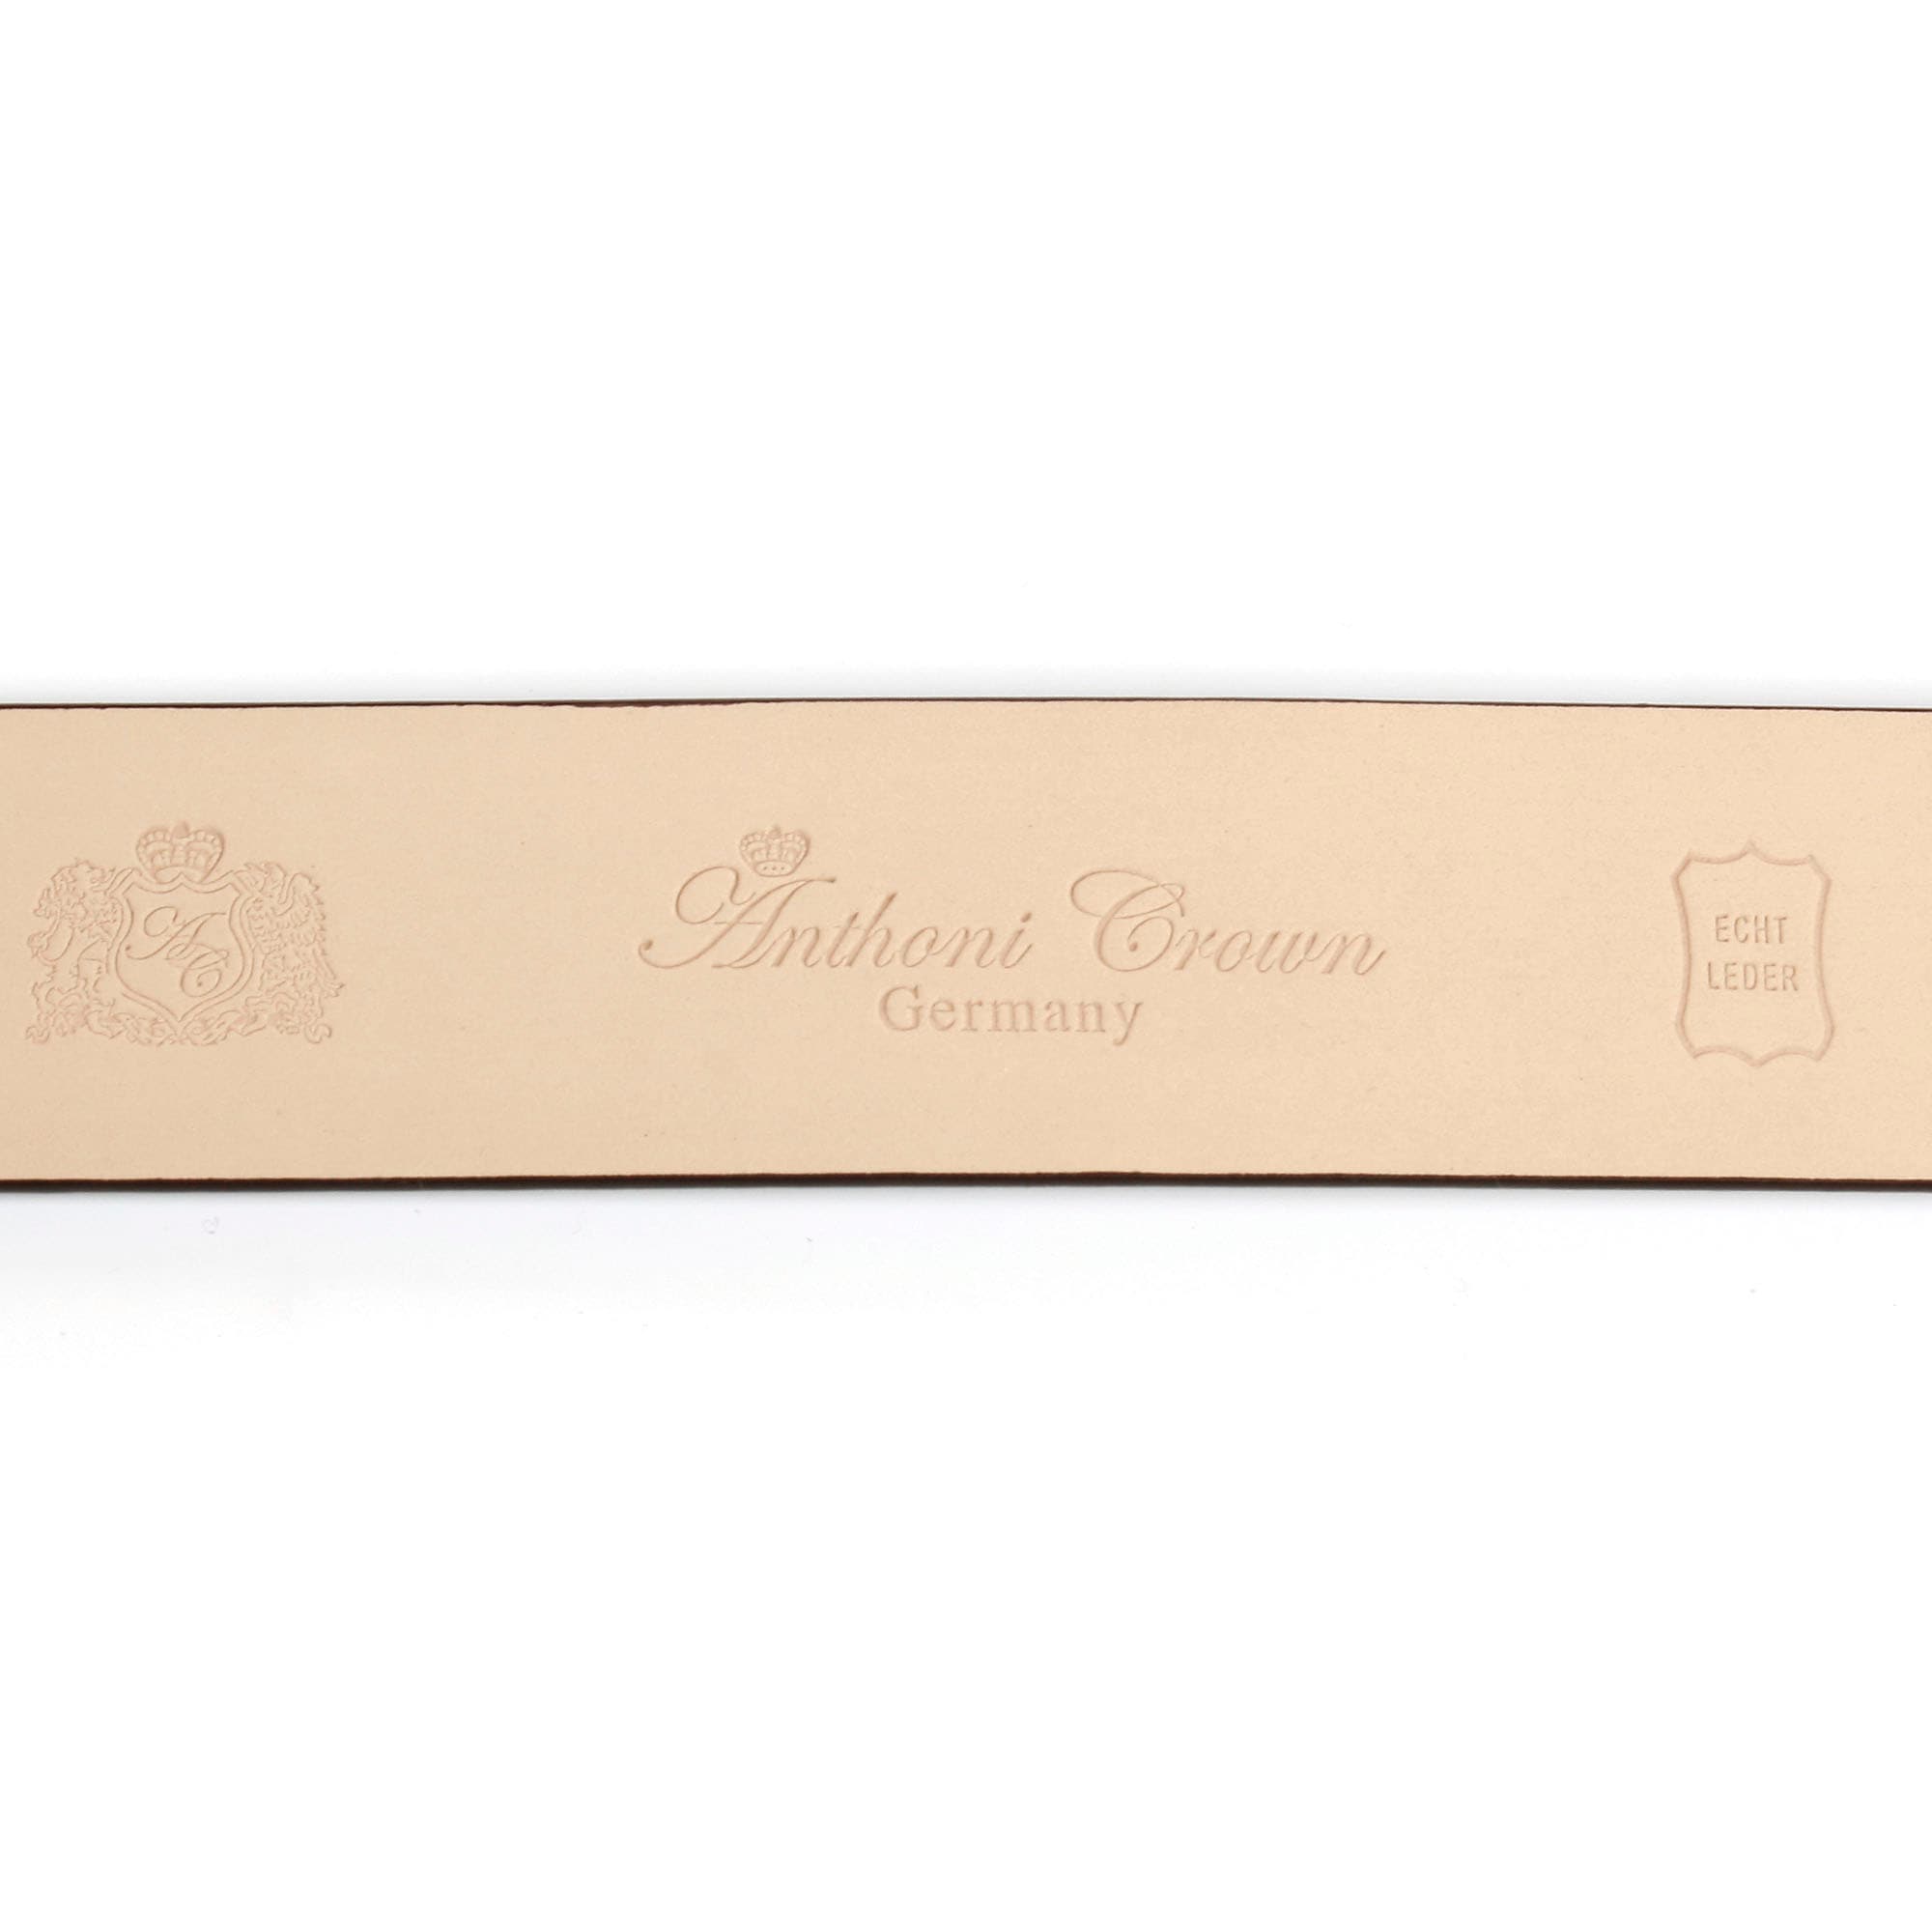 Lack online mit Lilienschließe Ledergürtel, Anthoni bestellen in OTTO Crown goldfarbener bei